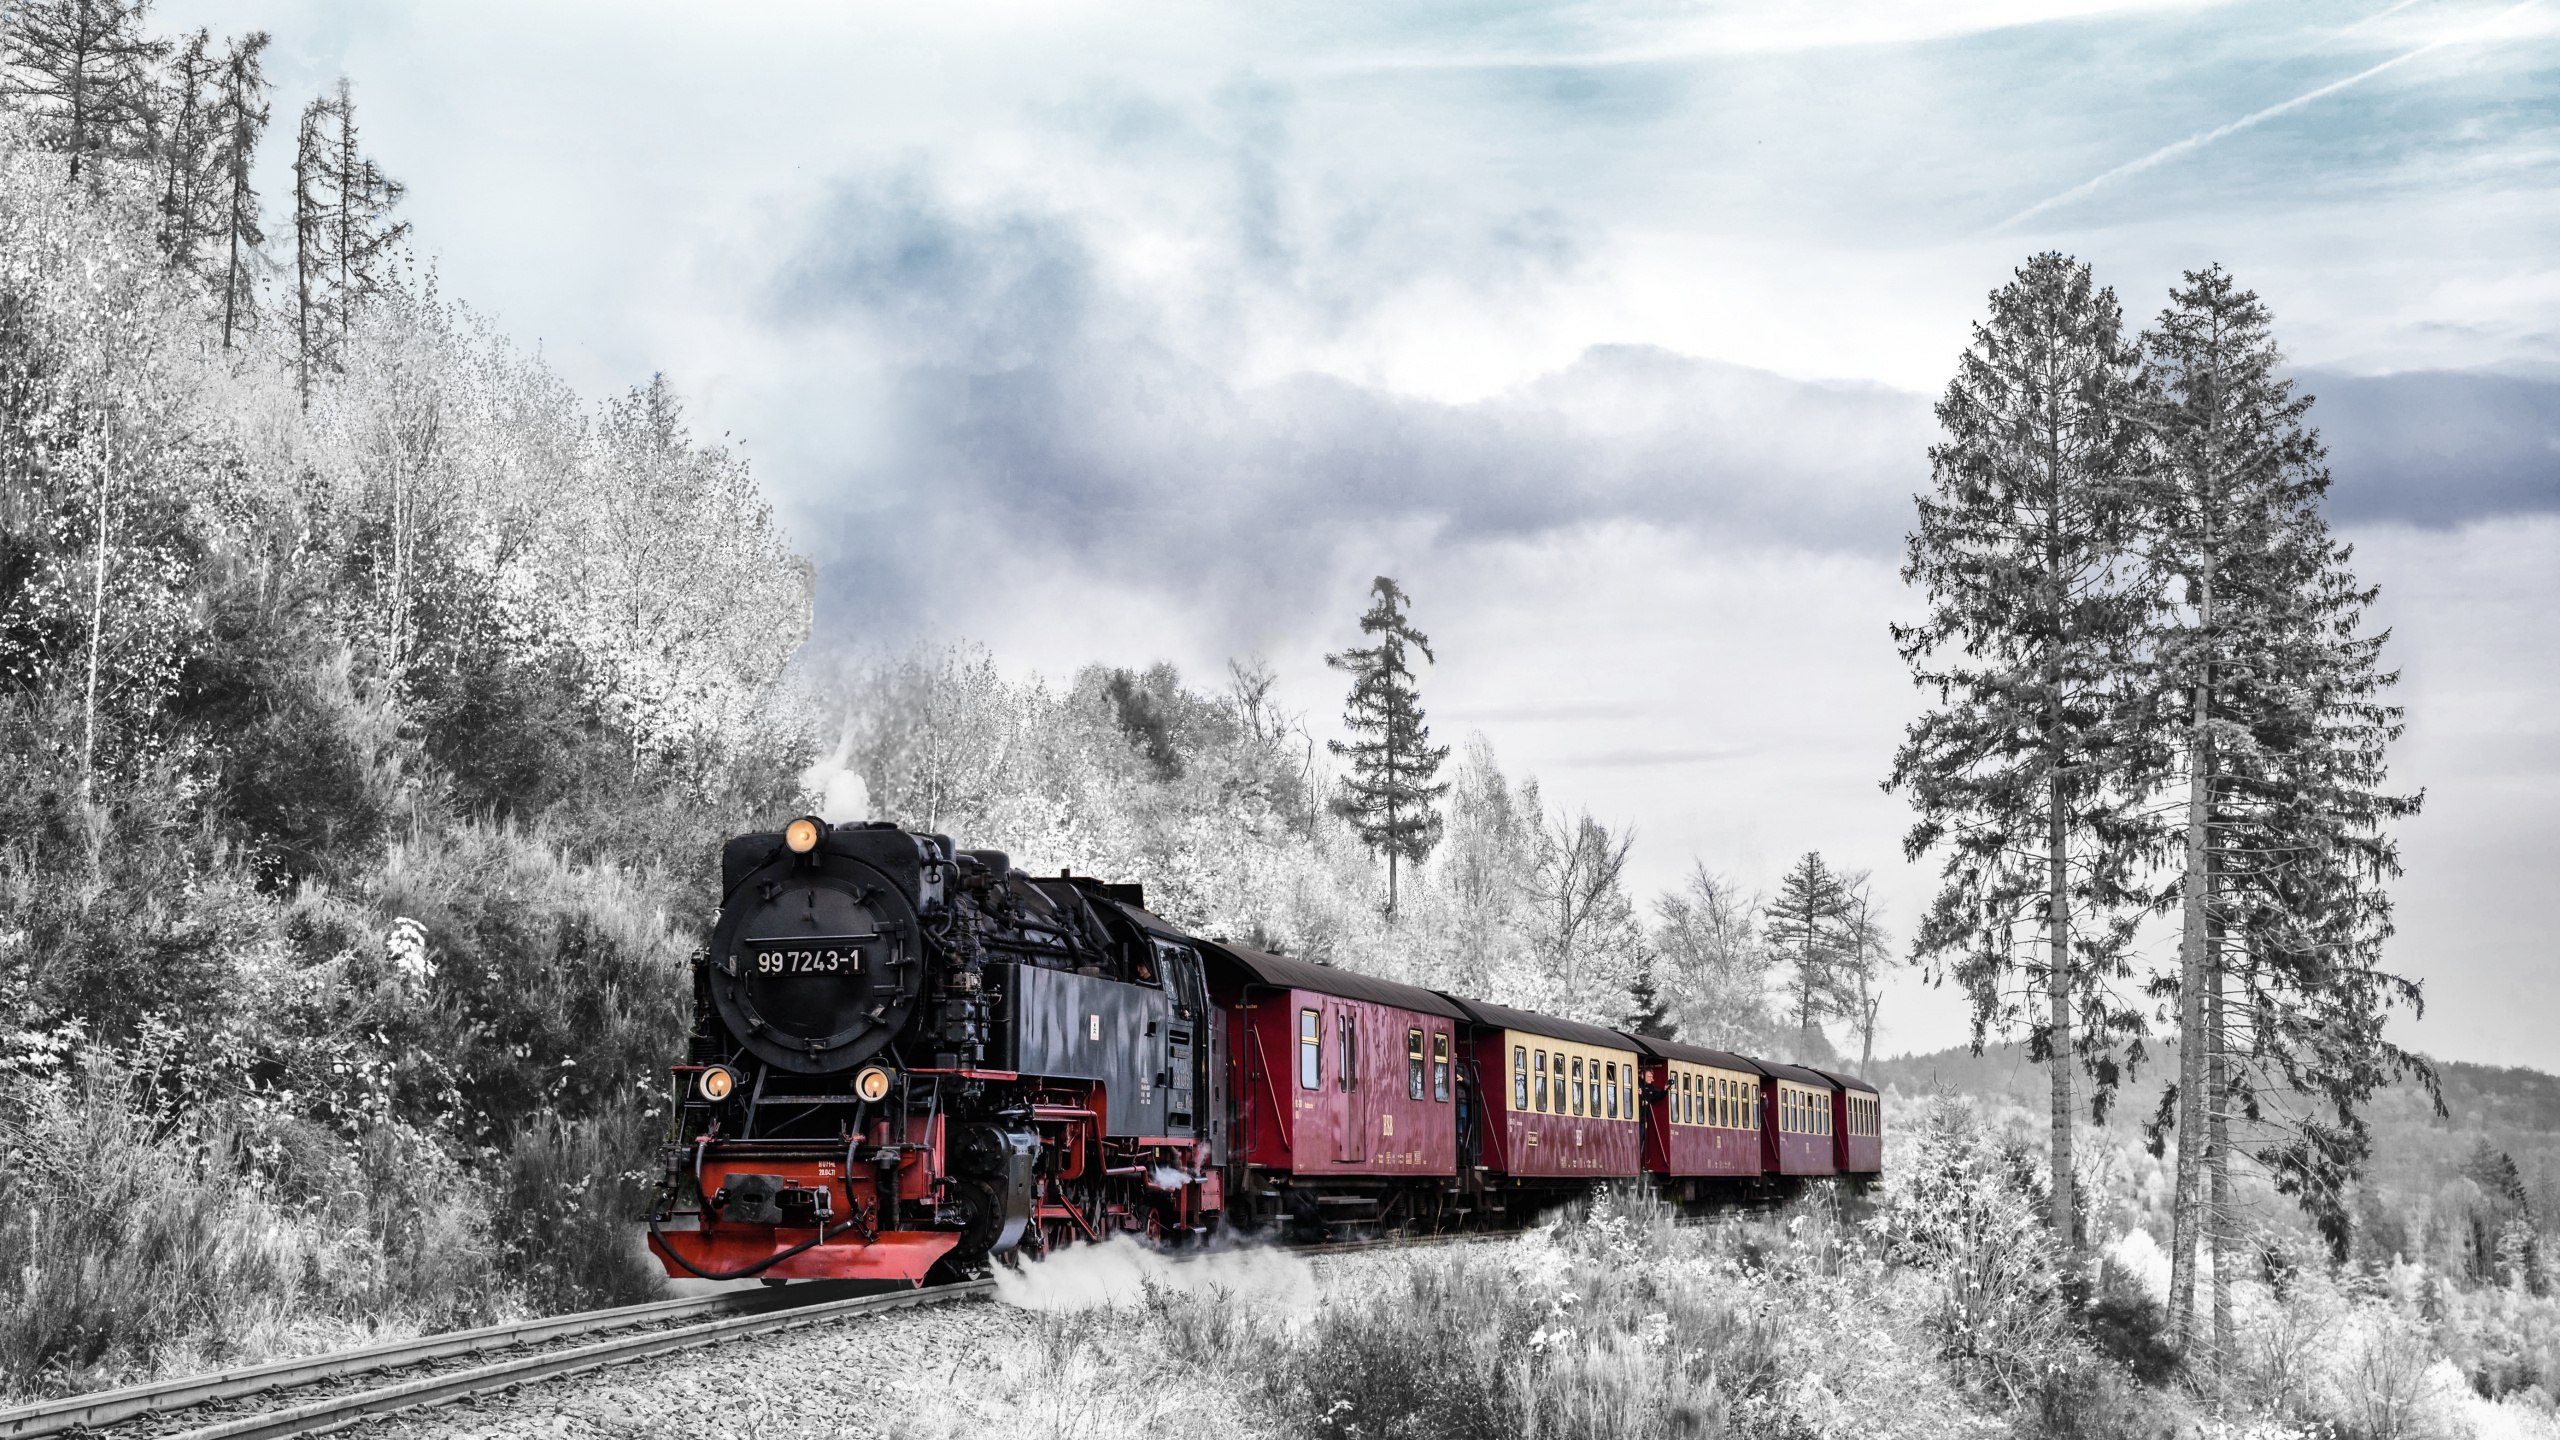 Train Rouge et Noir Sur Les Voies Ferrées Sous Ciel Nuageux. Wallpaper in 2560x1440 Resolution